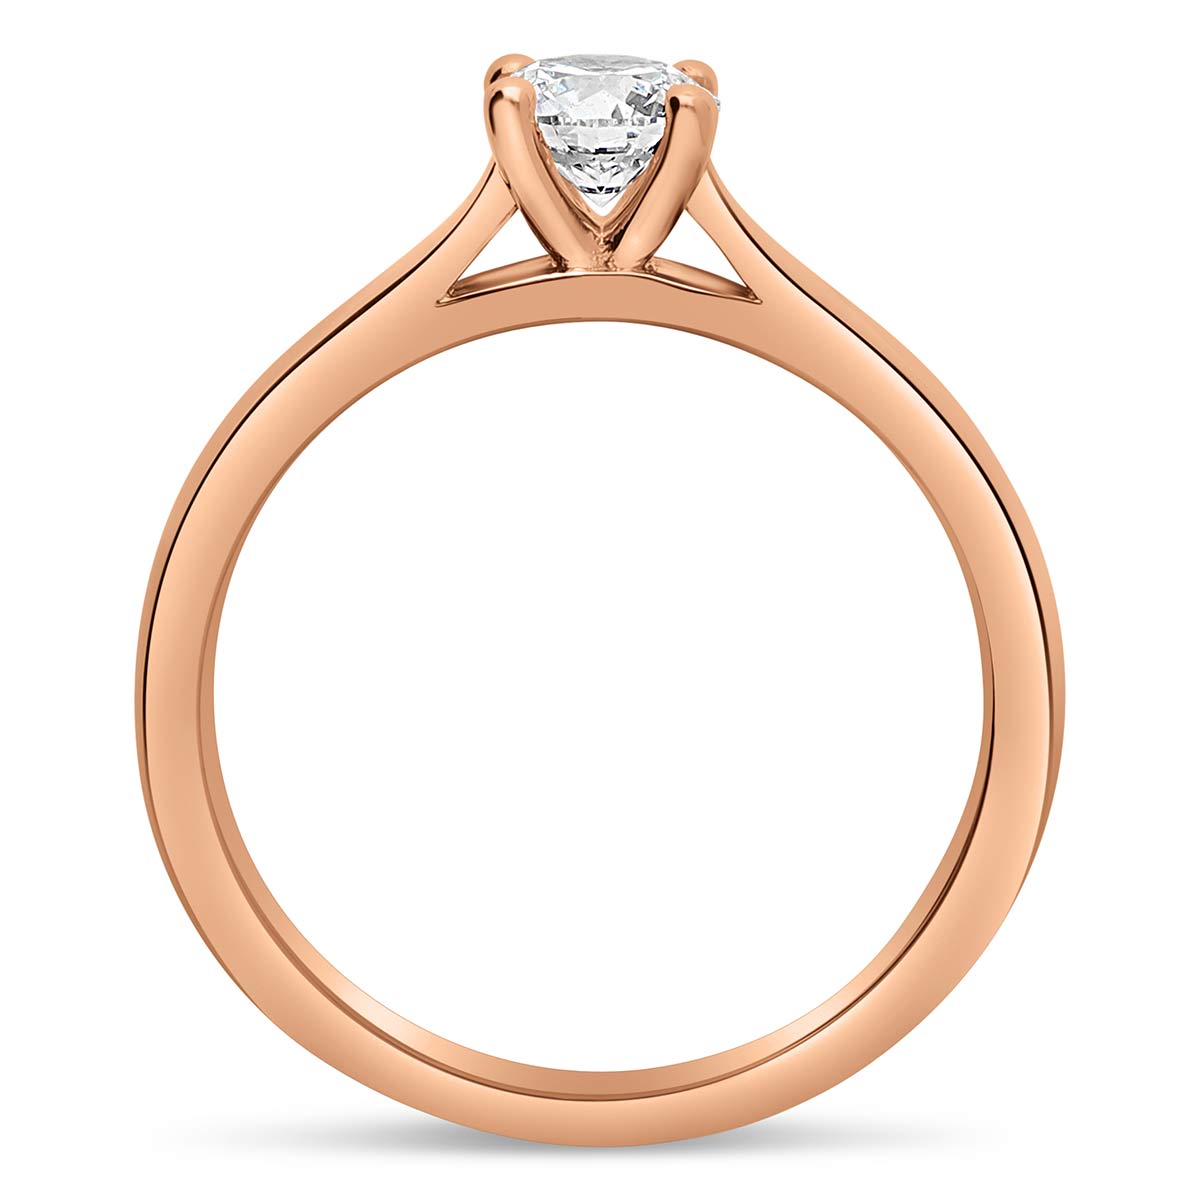 bora-bora-or-solitaires-diamants-certifies-style-classique-or-rose-750-